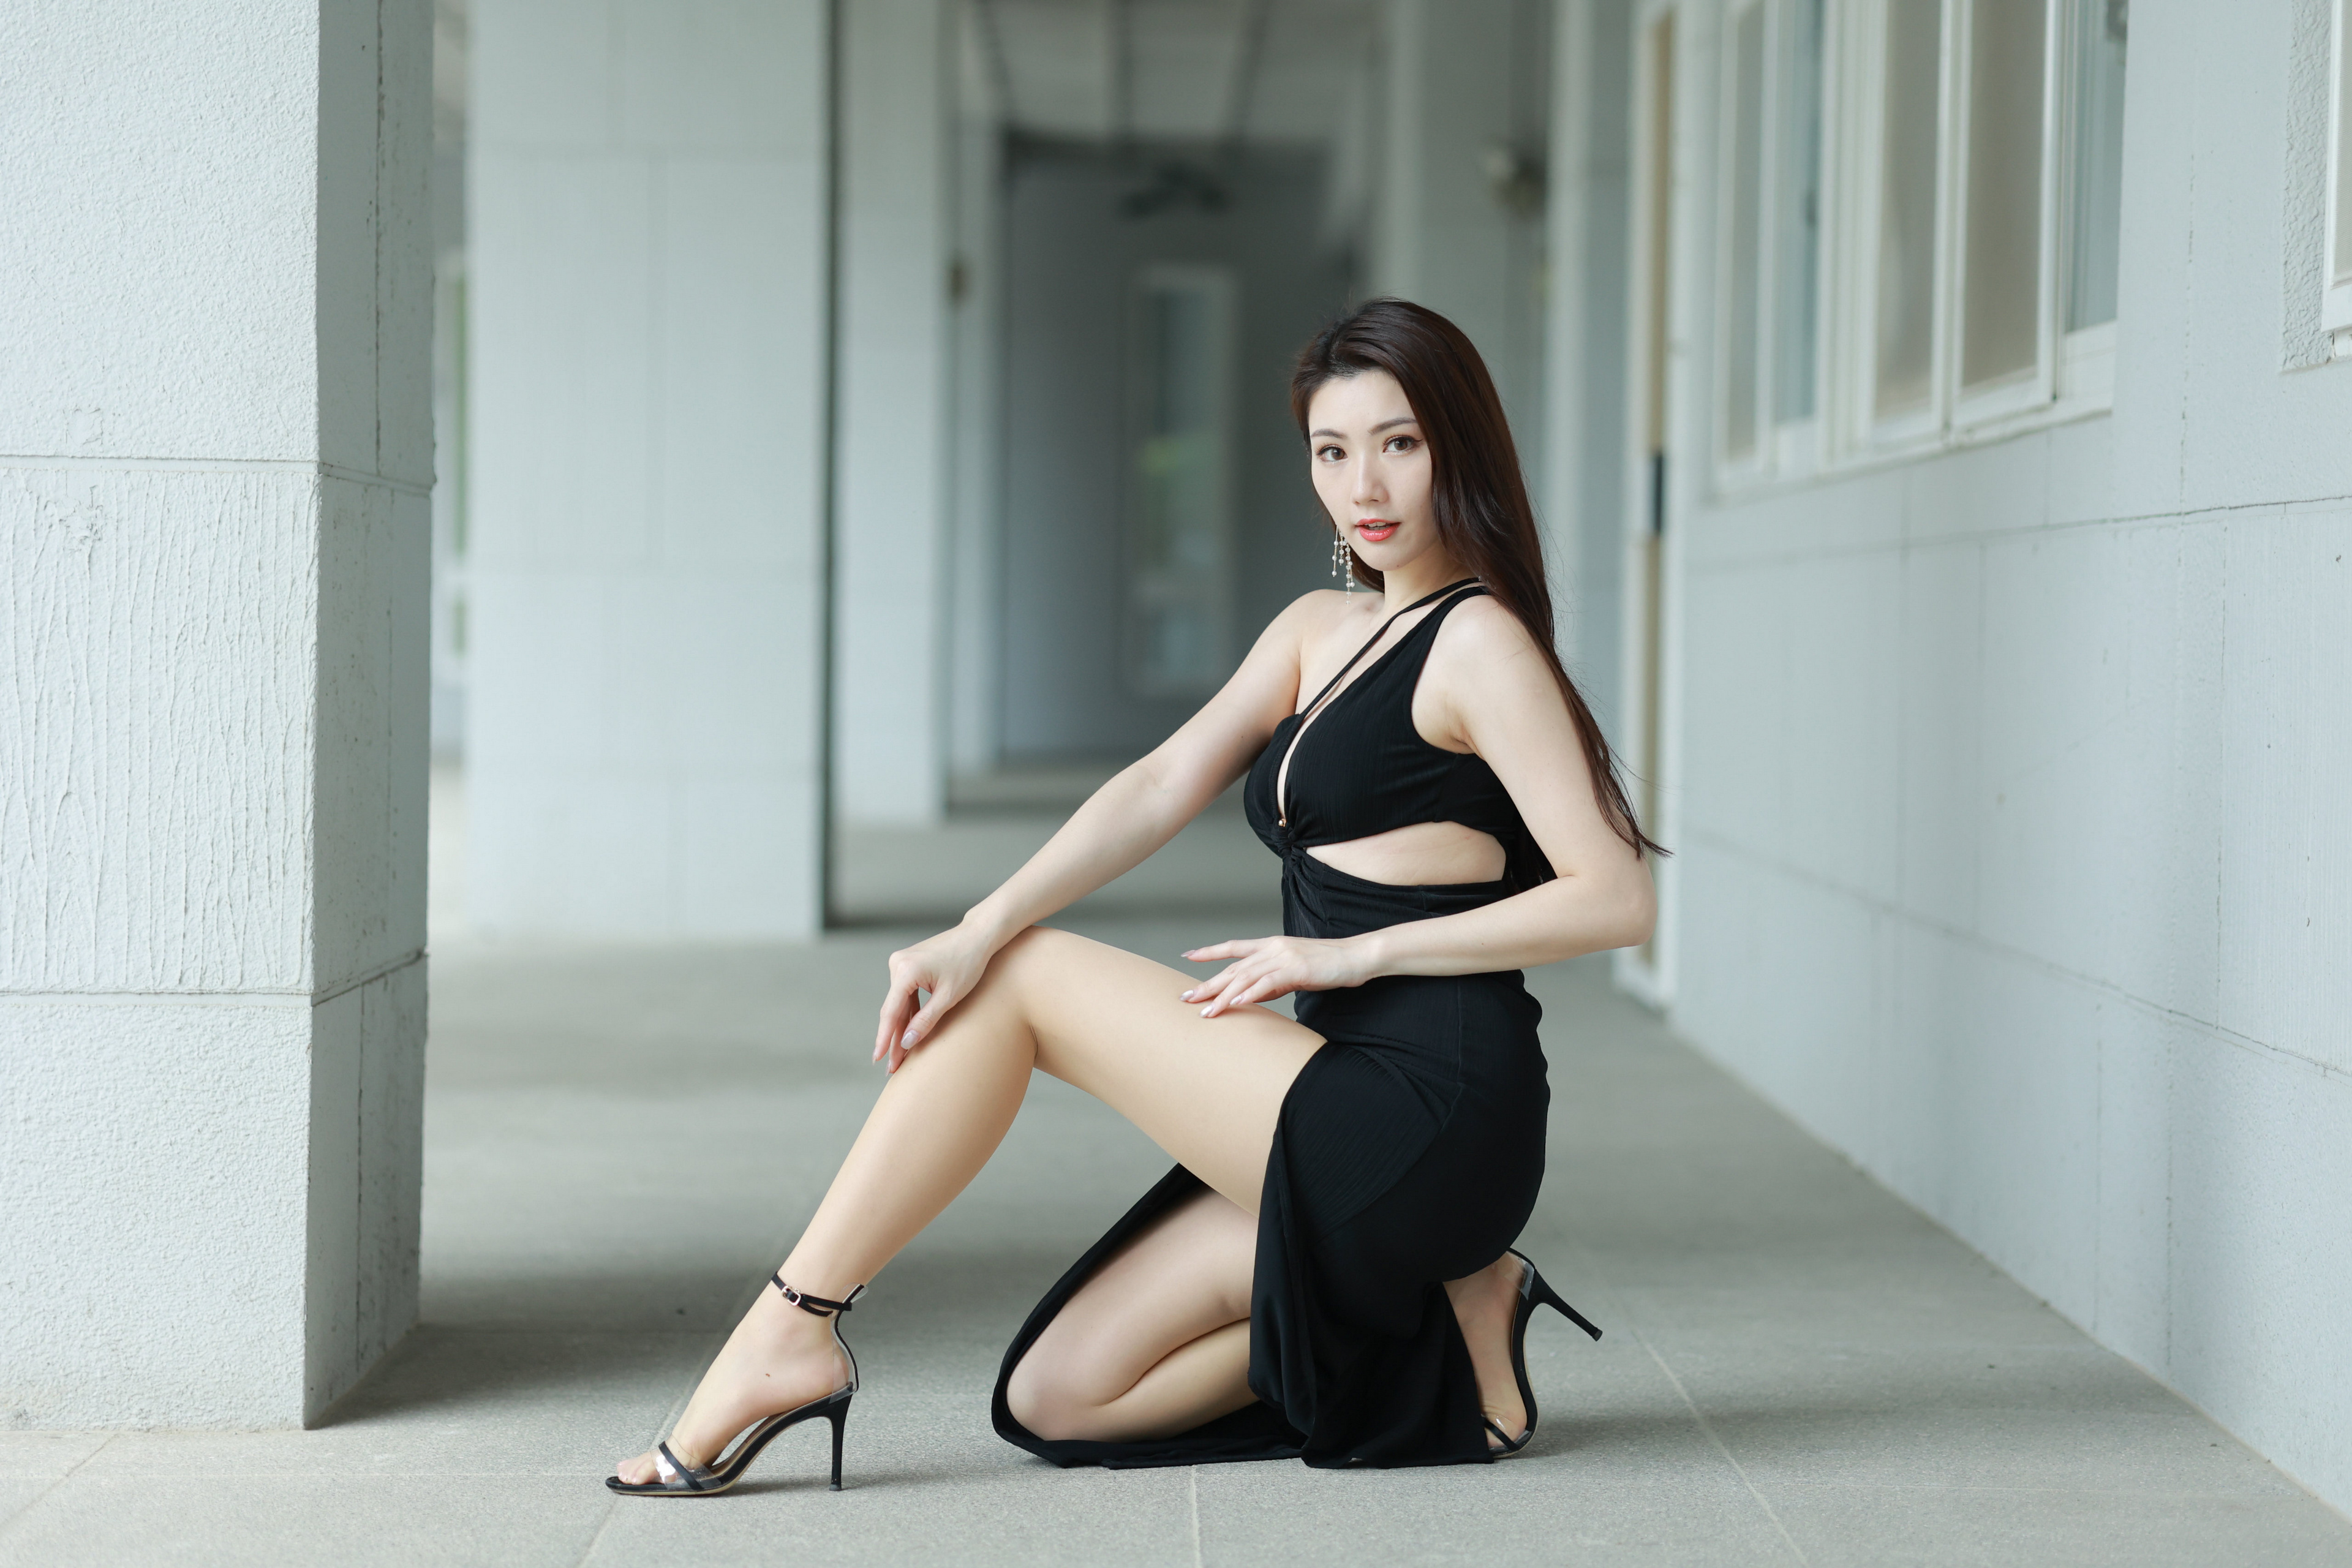 Asian Model Women Long Hair Dark Hair Bokeh Black Dress Legs Clothing Cutout 3840x2560